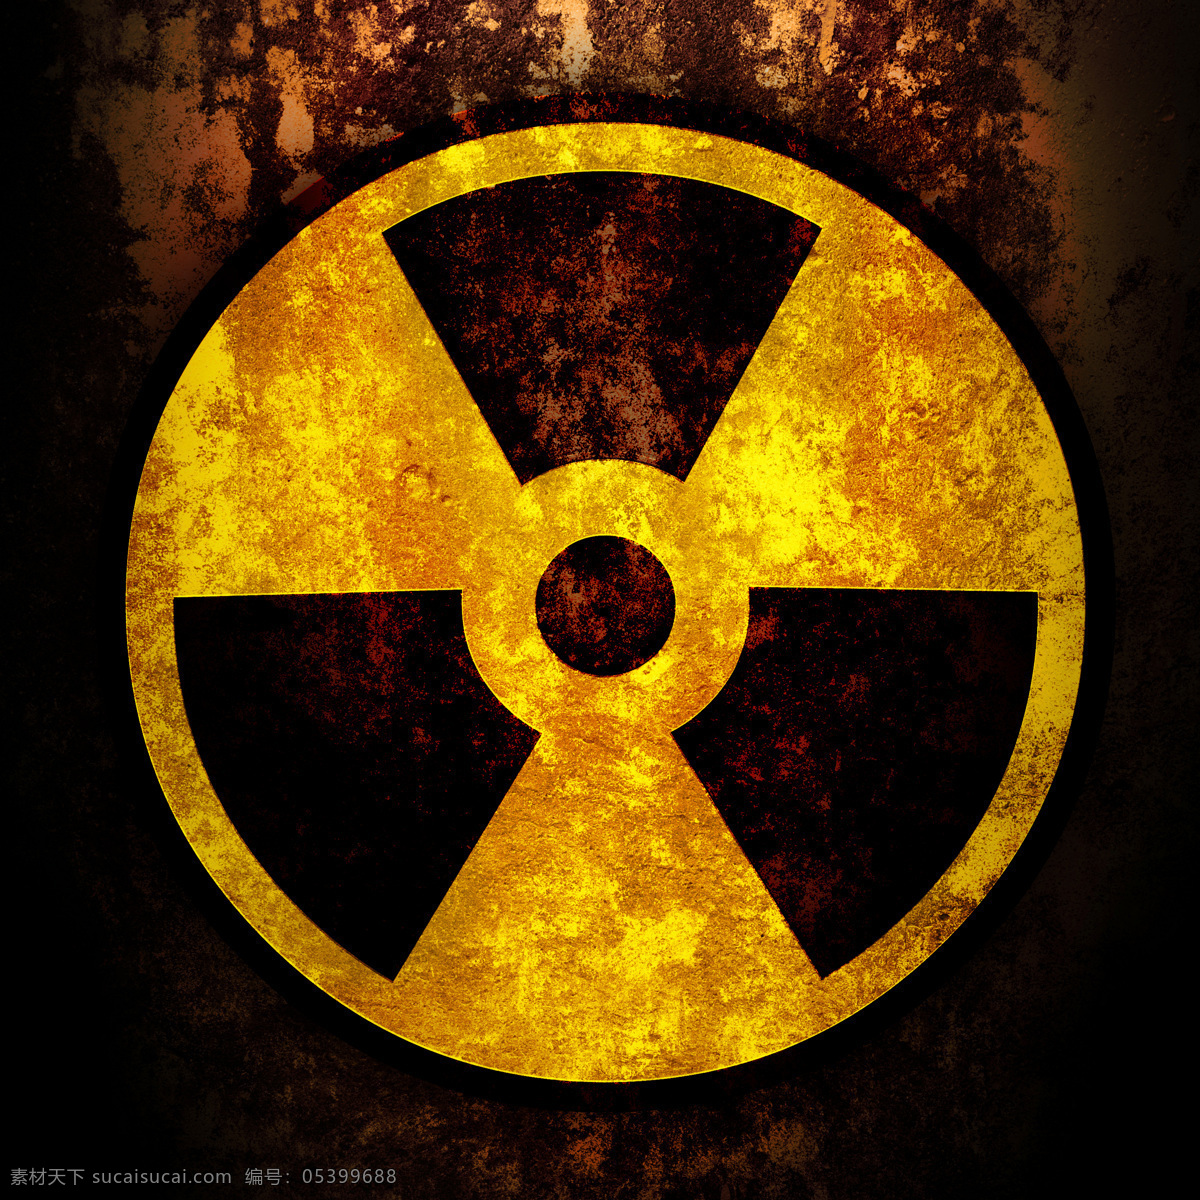 核辐射标志 核辐射 辐射标志 核污染 辐射 核能 科学研究 现代科技